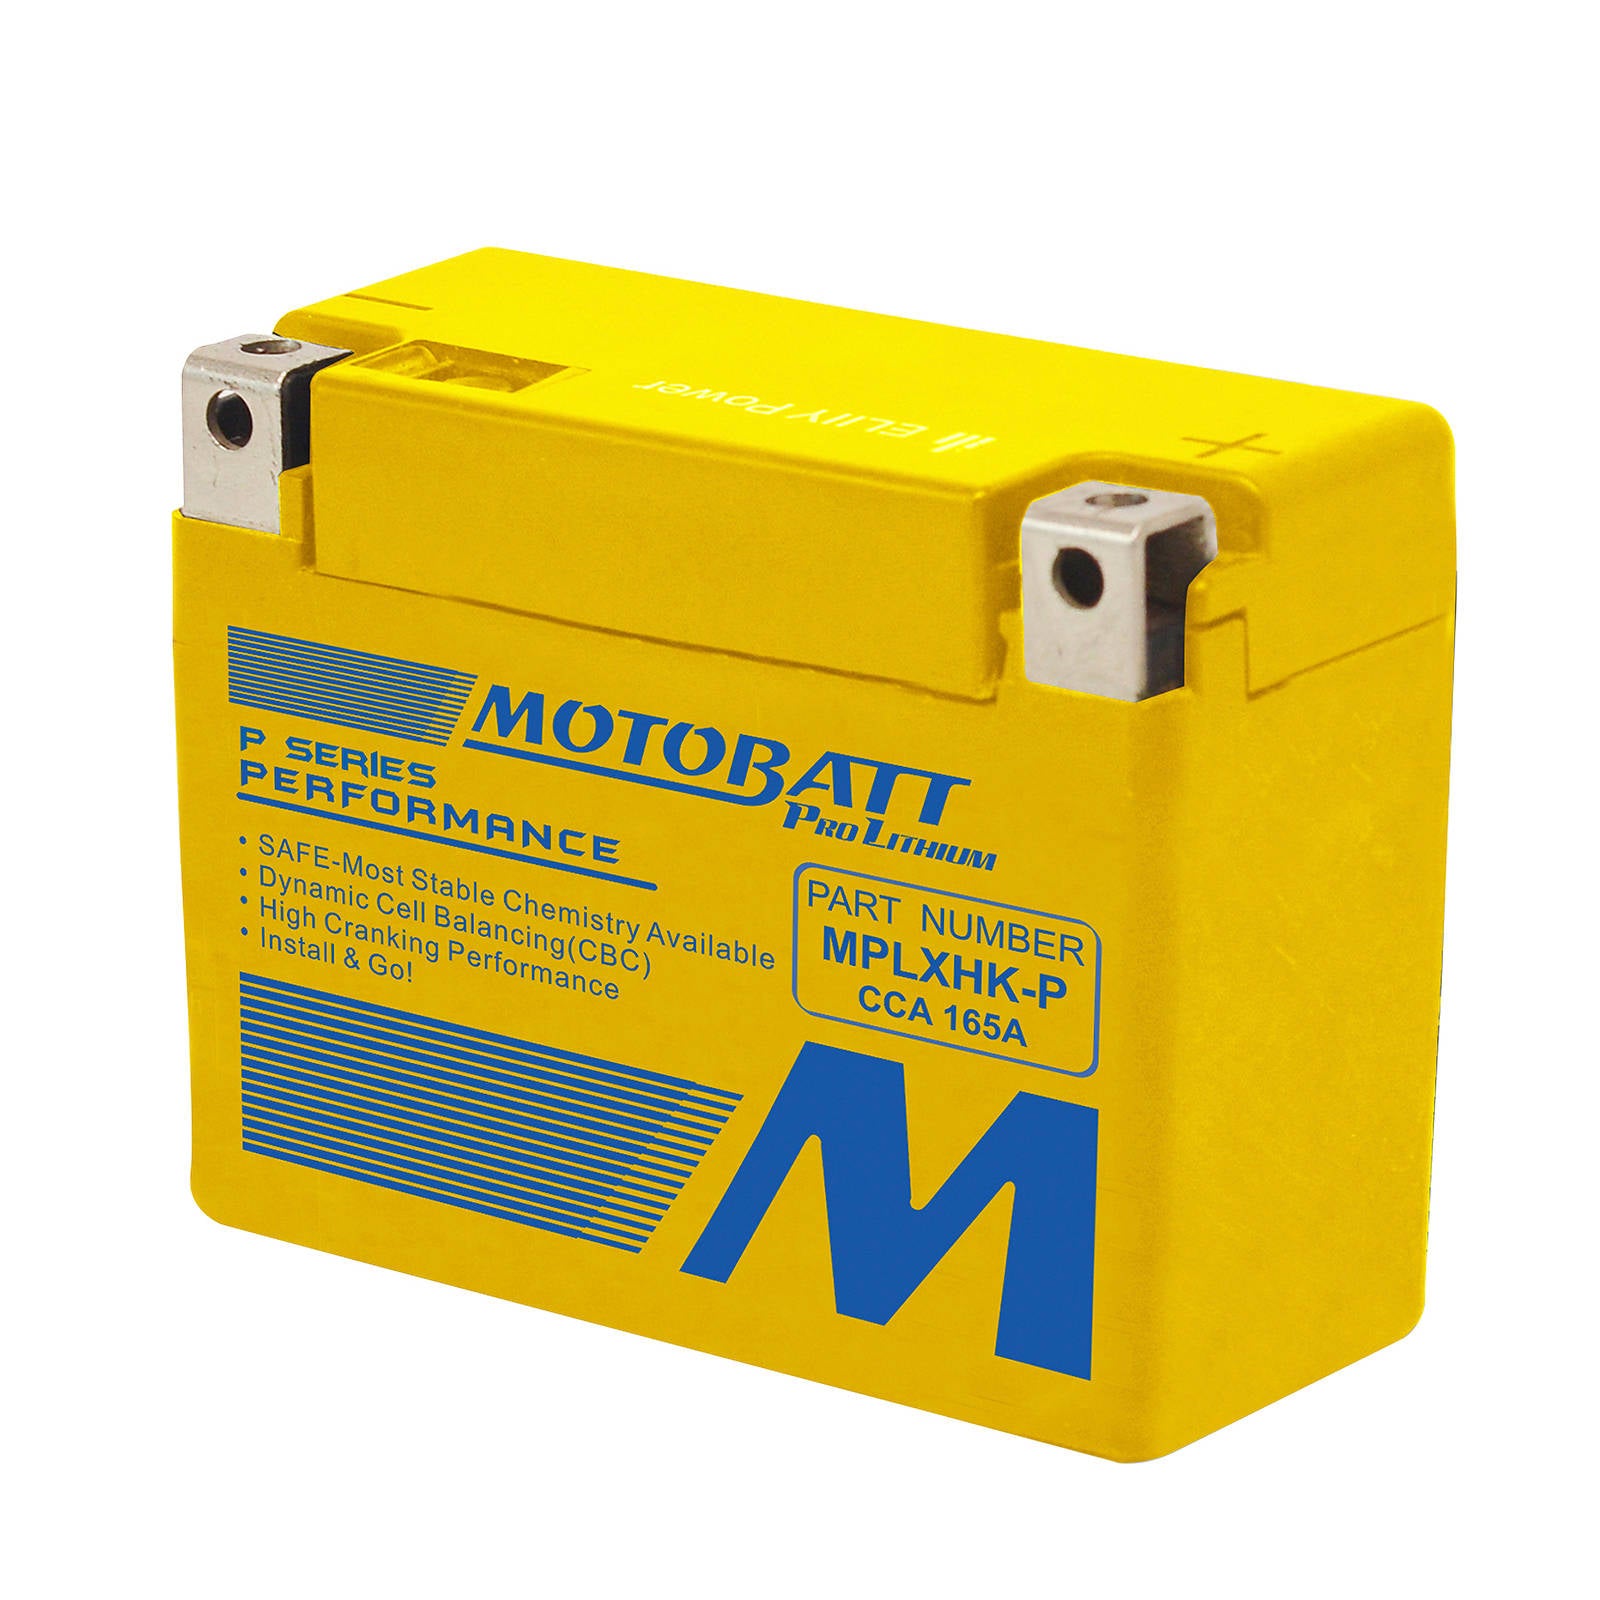 New MOTOBATT Battery Pro Lithium - MPLXHK-P #MBLXHKP